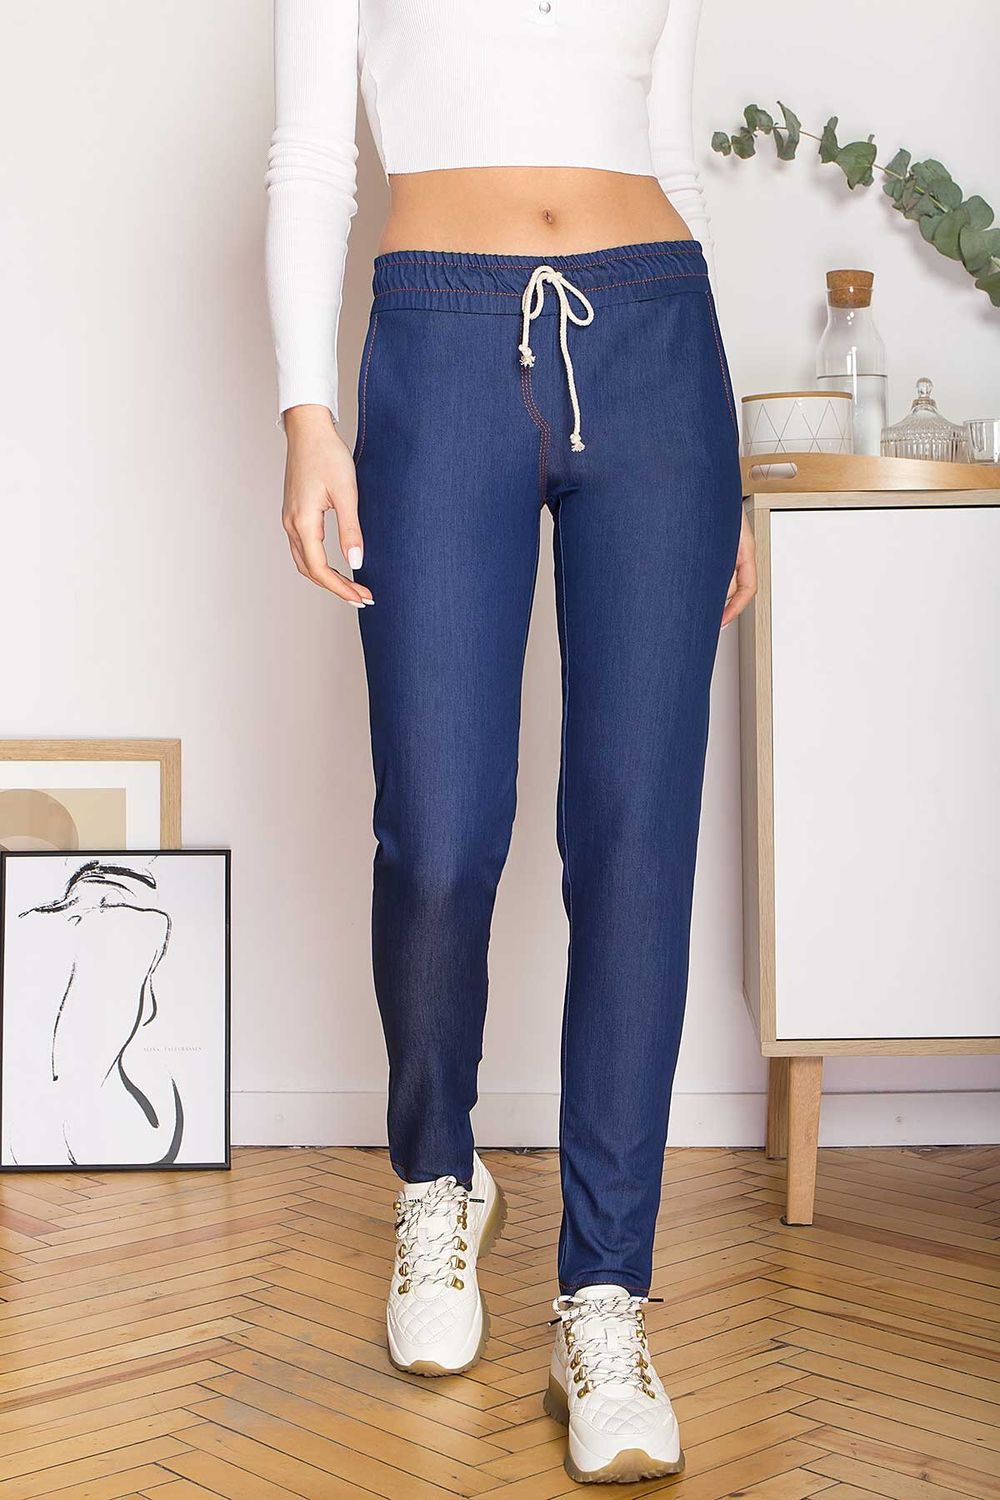 Жіночі джинсові штани на гумці - фото